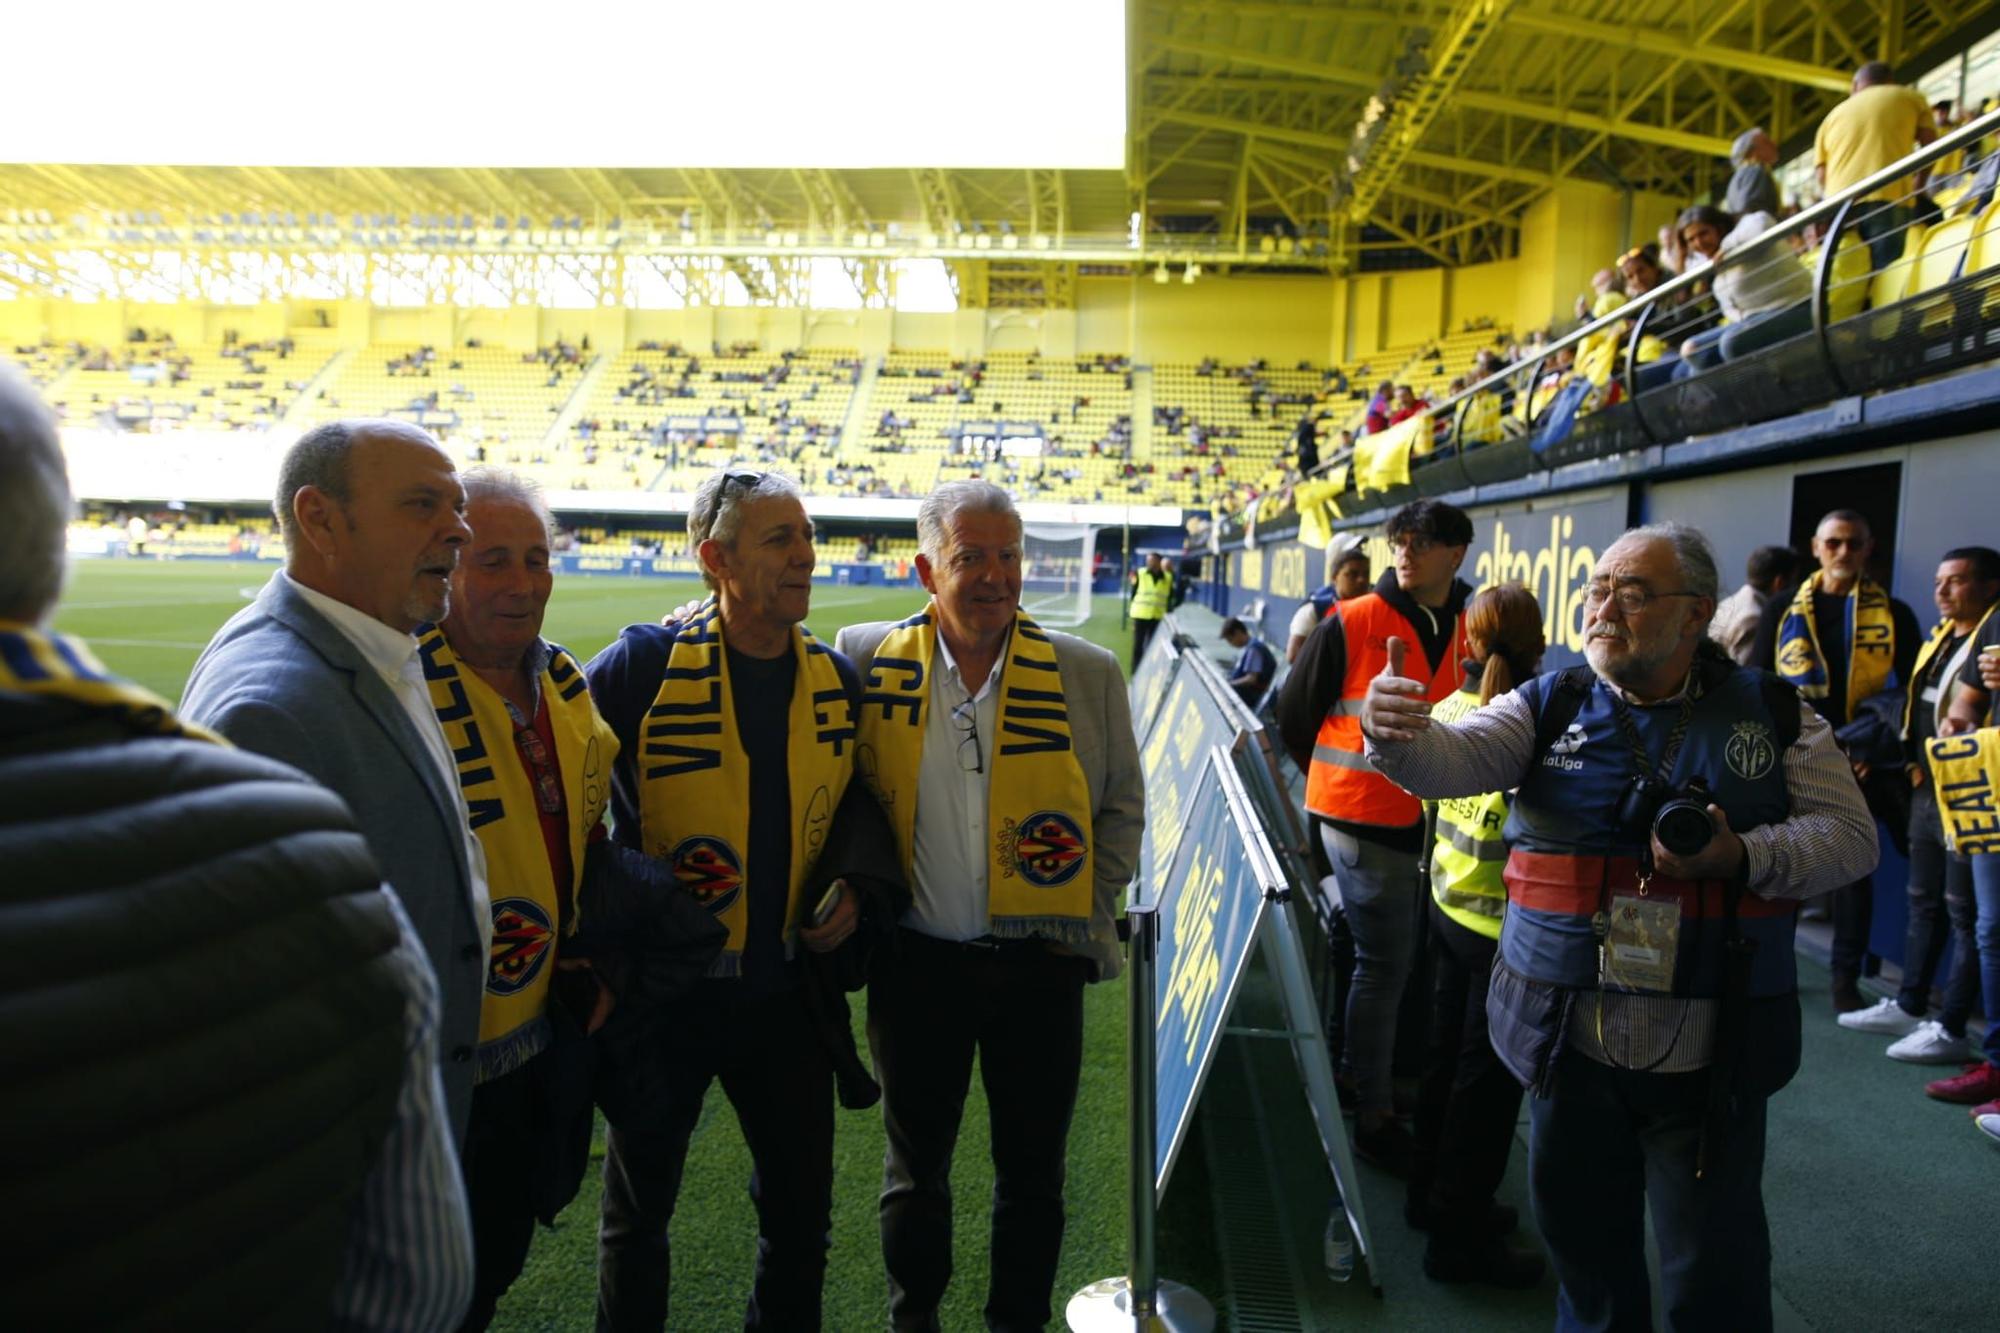 Ambiente previo al partido de leyendas del Villarreal CF en imágenes